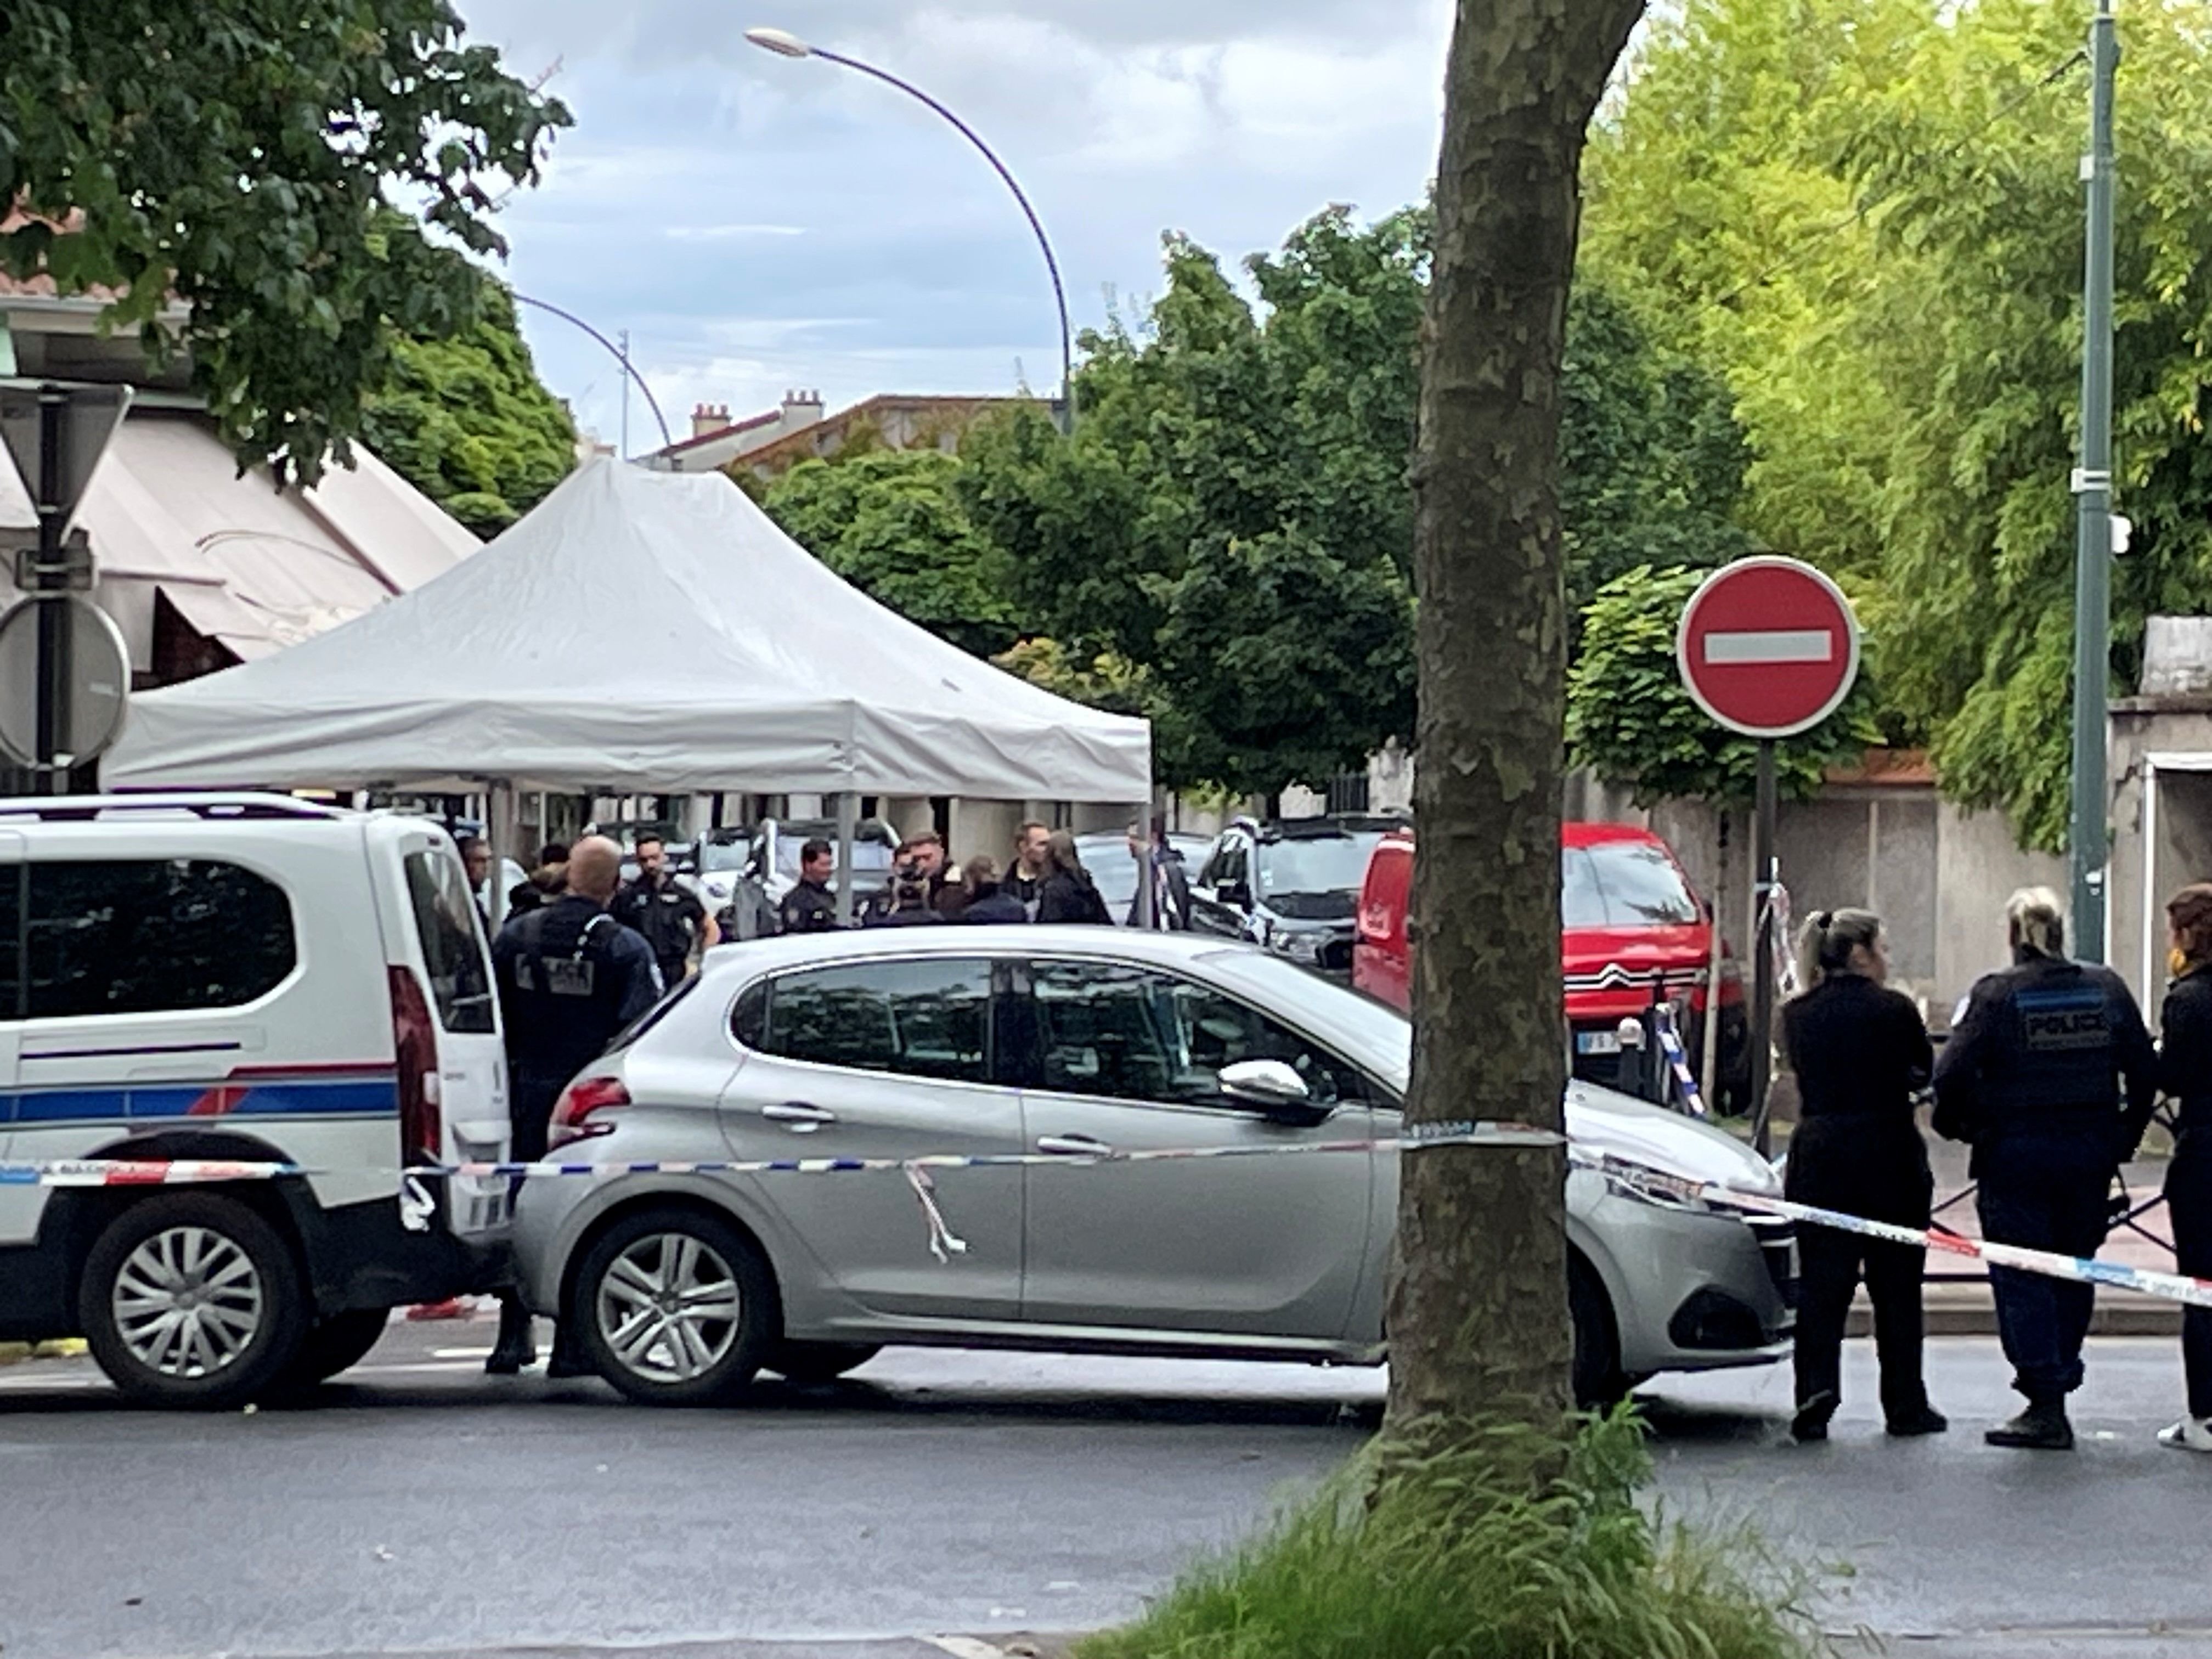 Saint-Maur-des-Fossés, le 30 mai. Plusieurs heures après le drame, les policiers étaient encore présents en nombre sur place, dans le cadre de l'enquête pour homicide volontaire. LP/Sylvain Deleuze